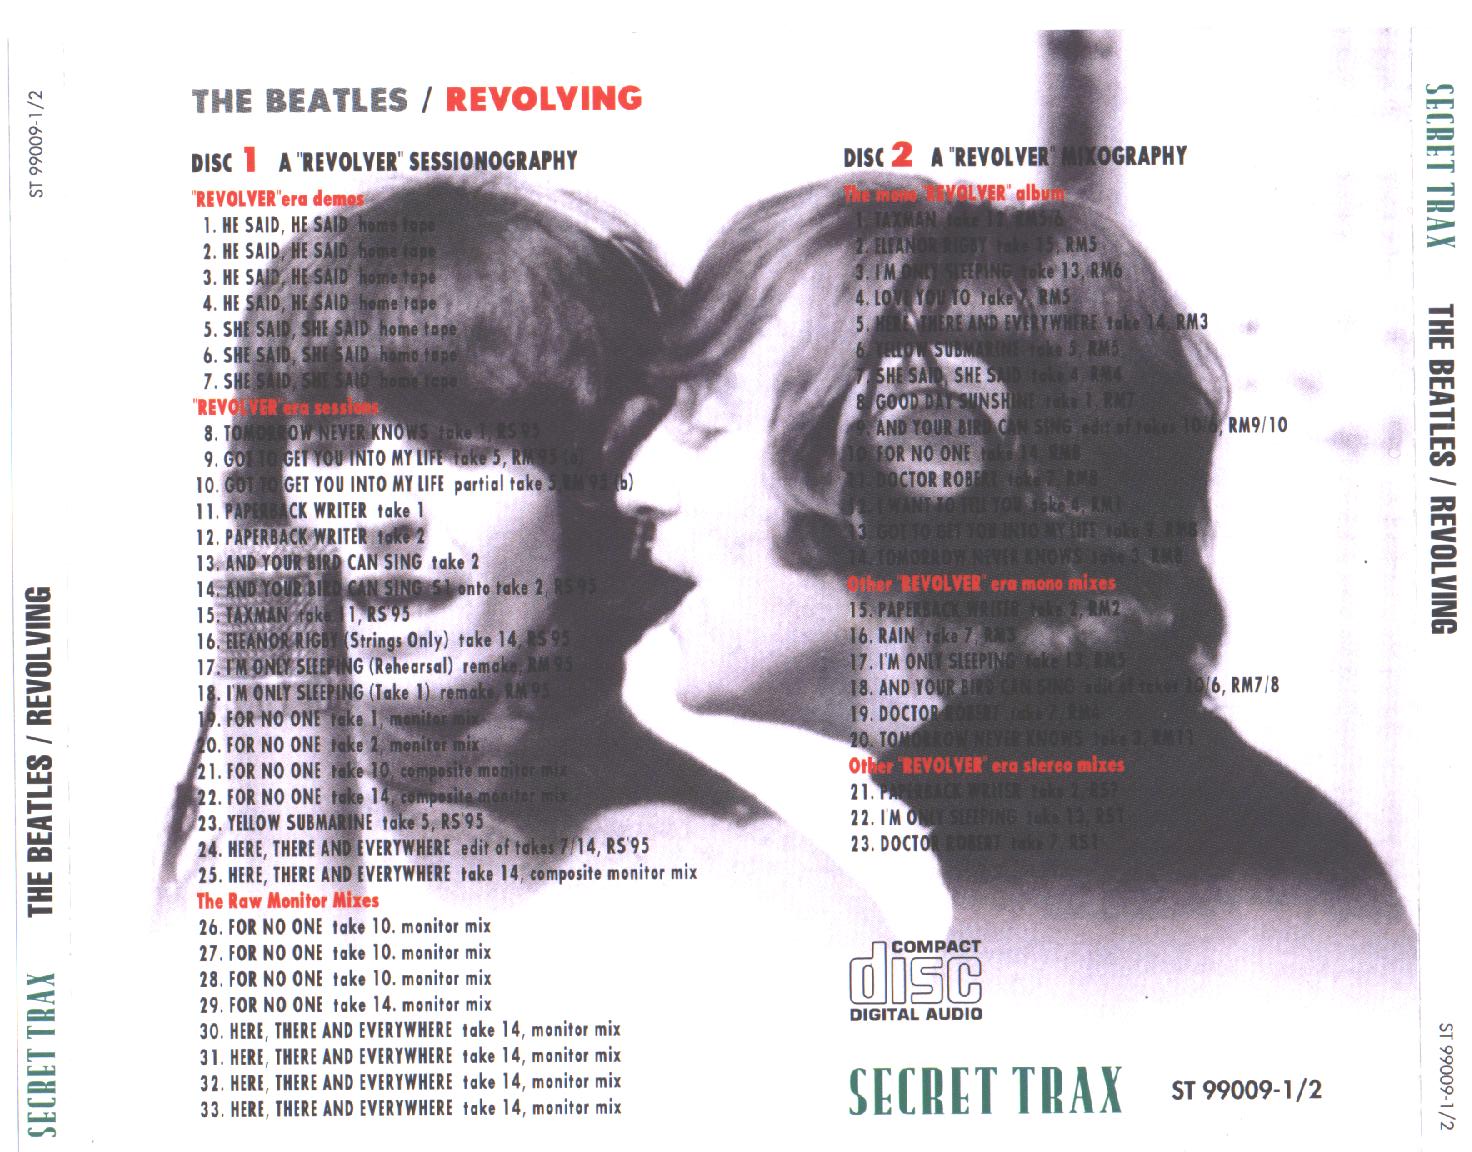 Beatles-Revolving (2).jpg